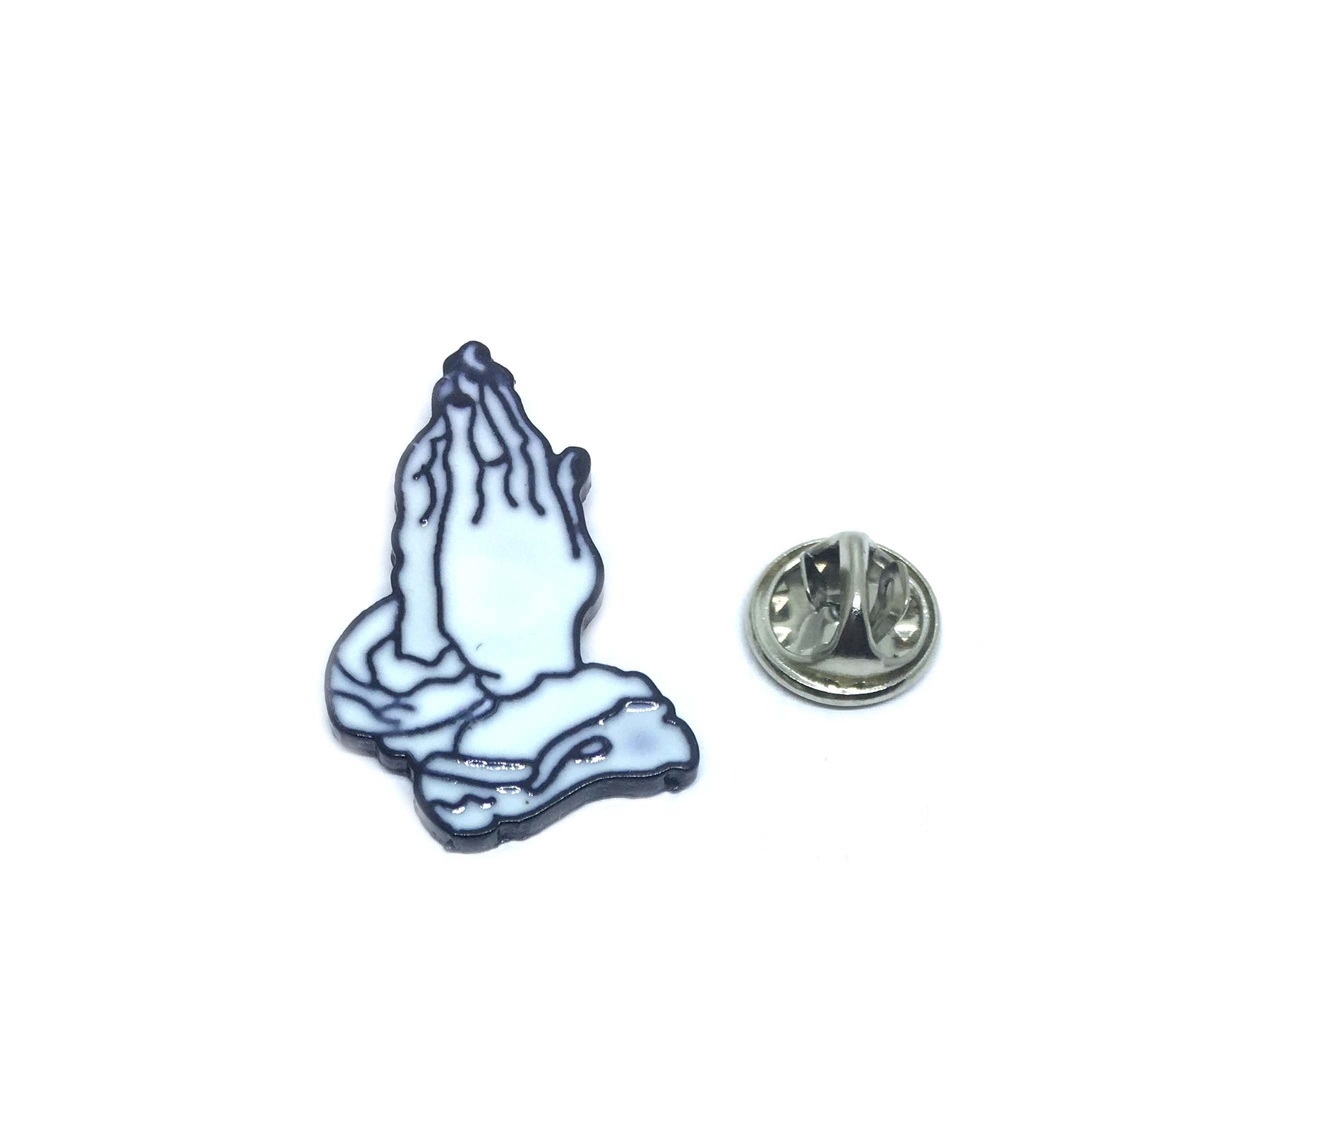 Praying Hands Enamel Pin